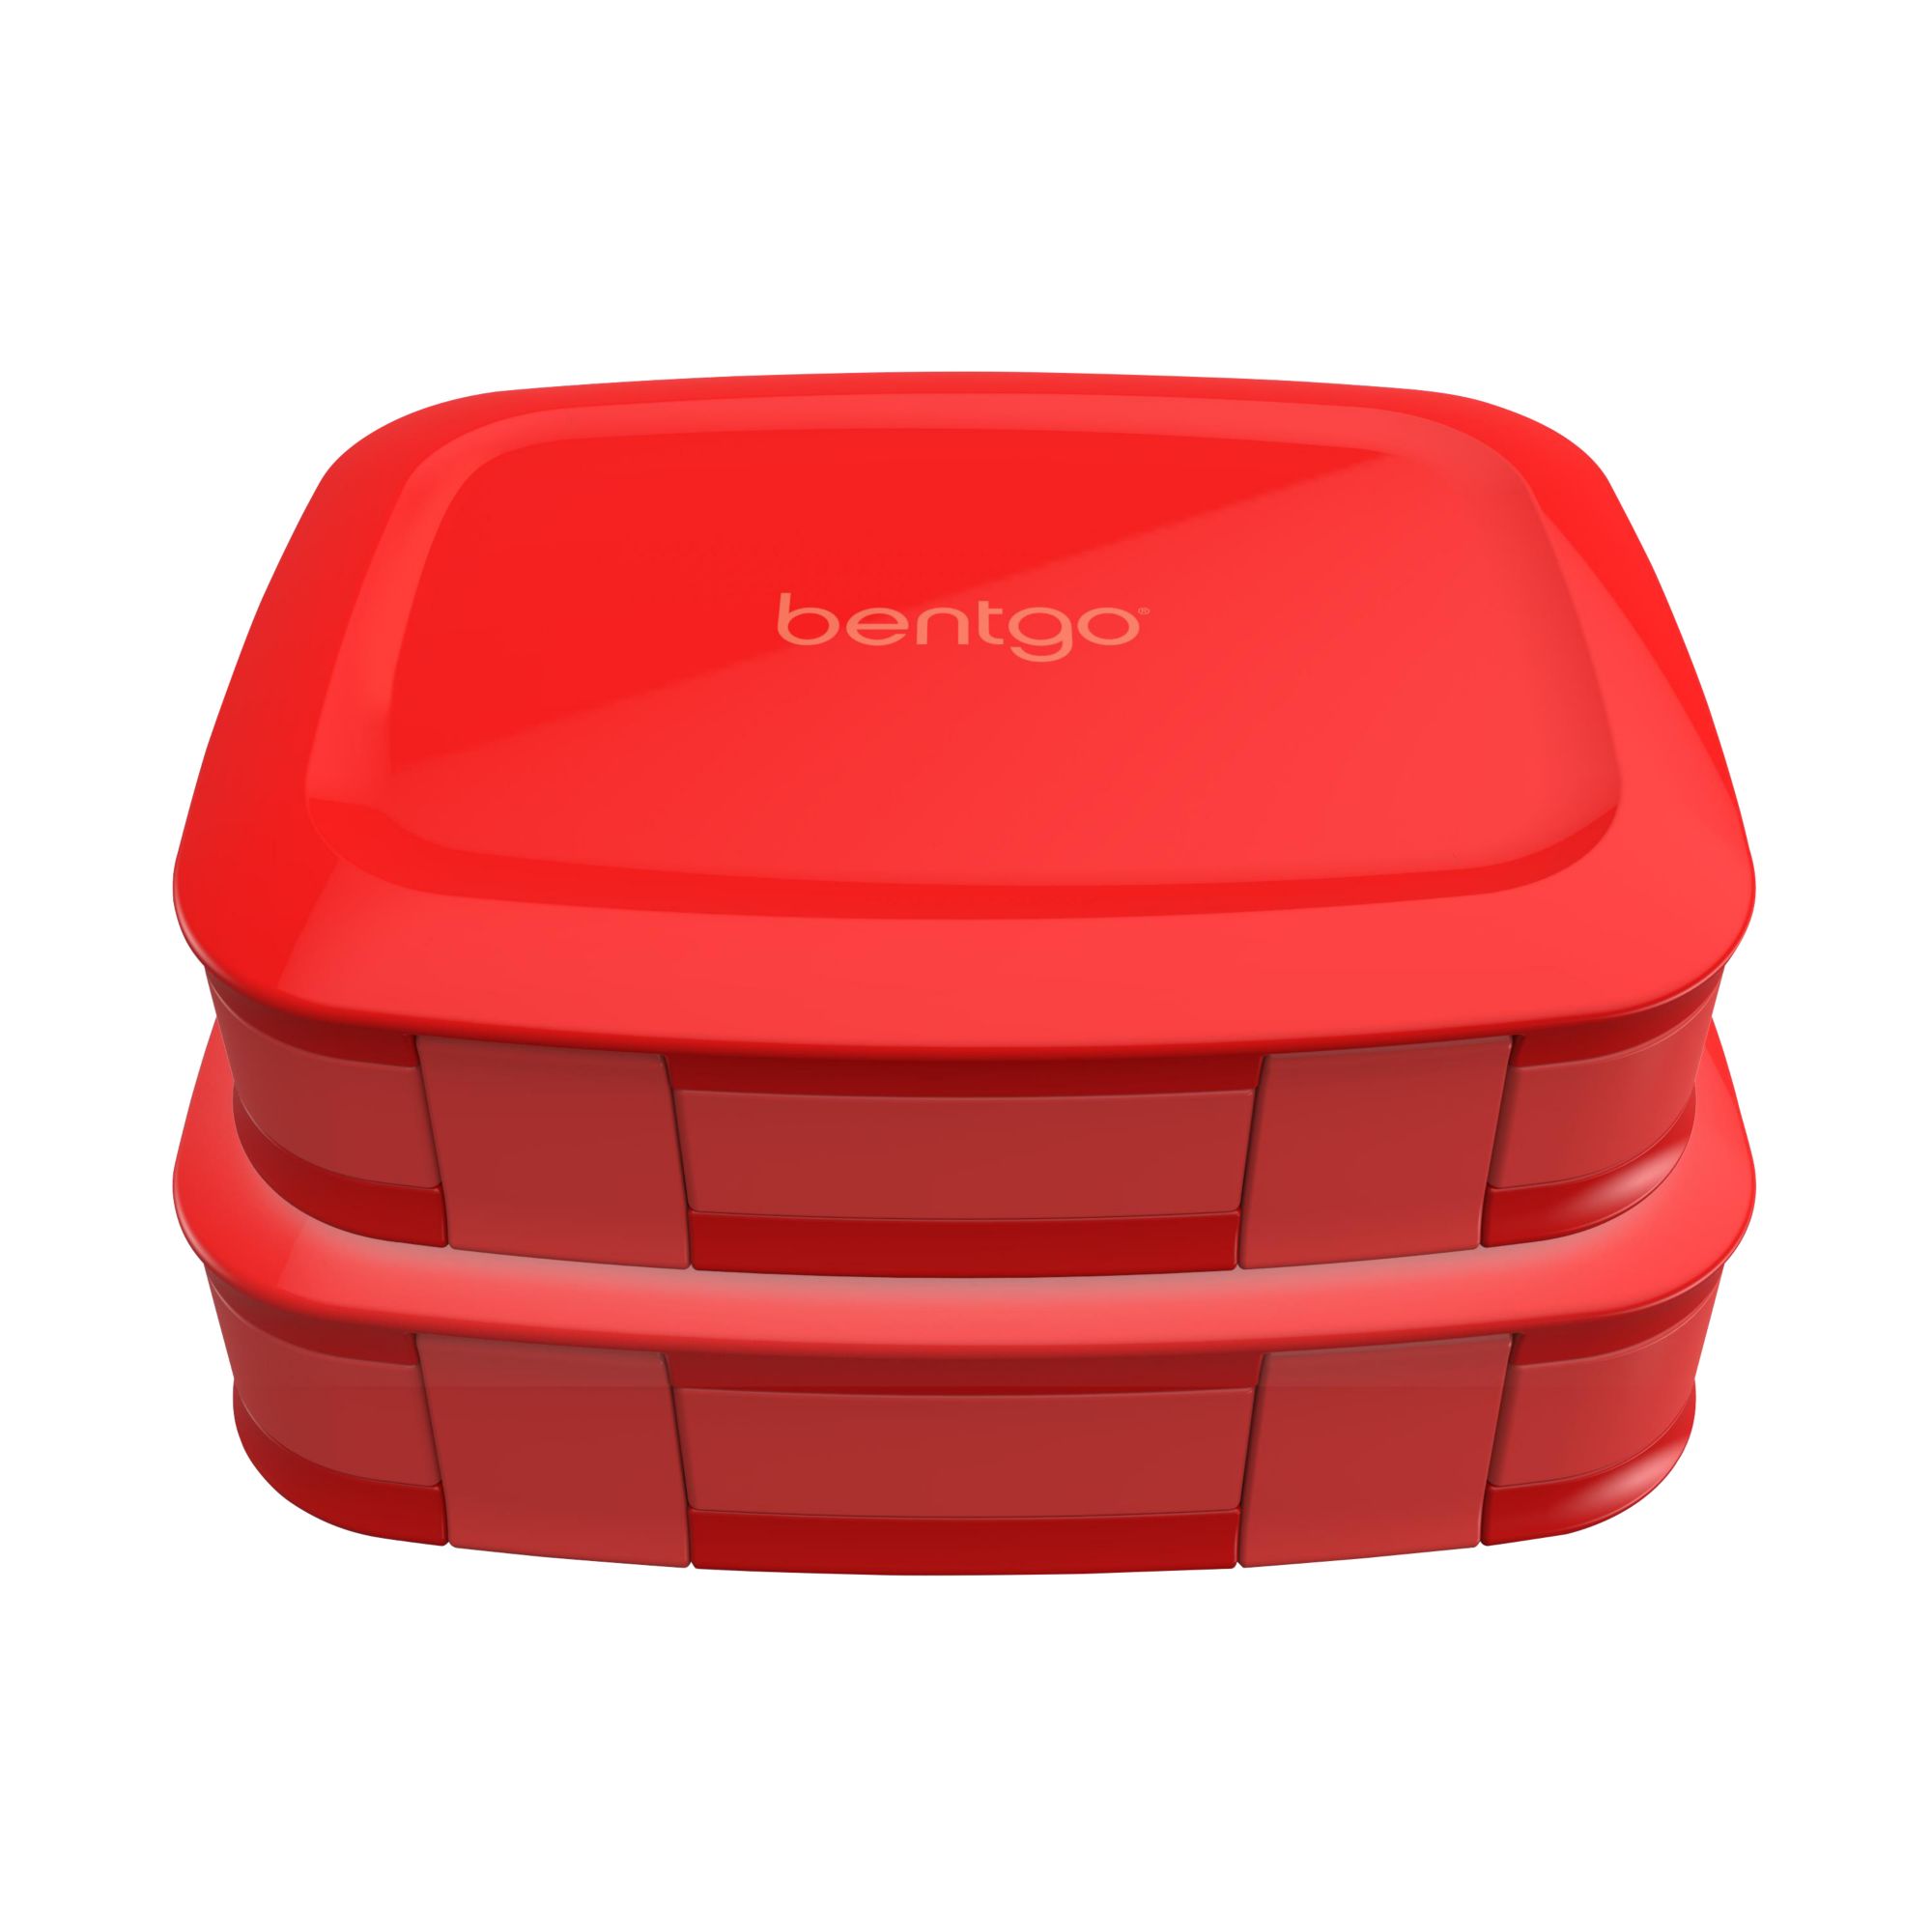 Bentgo Kids' Snack Leak-proof Storage Container Aqua